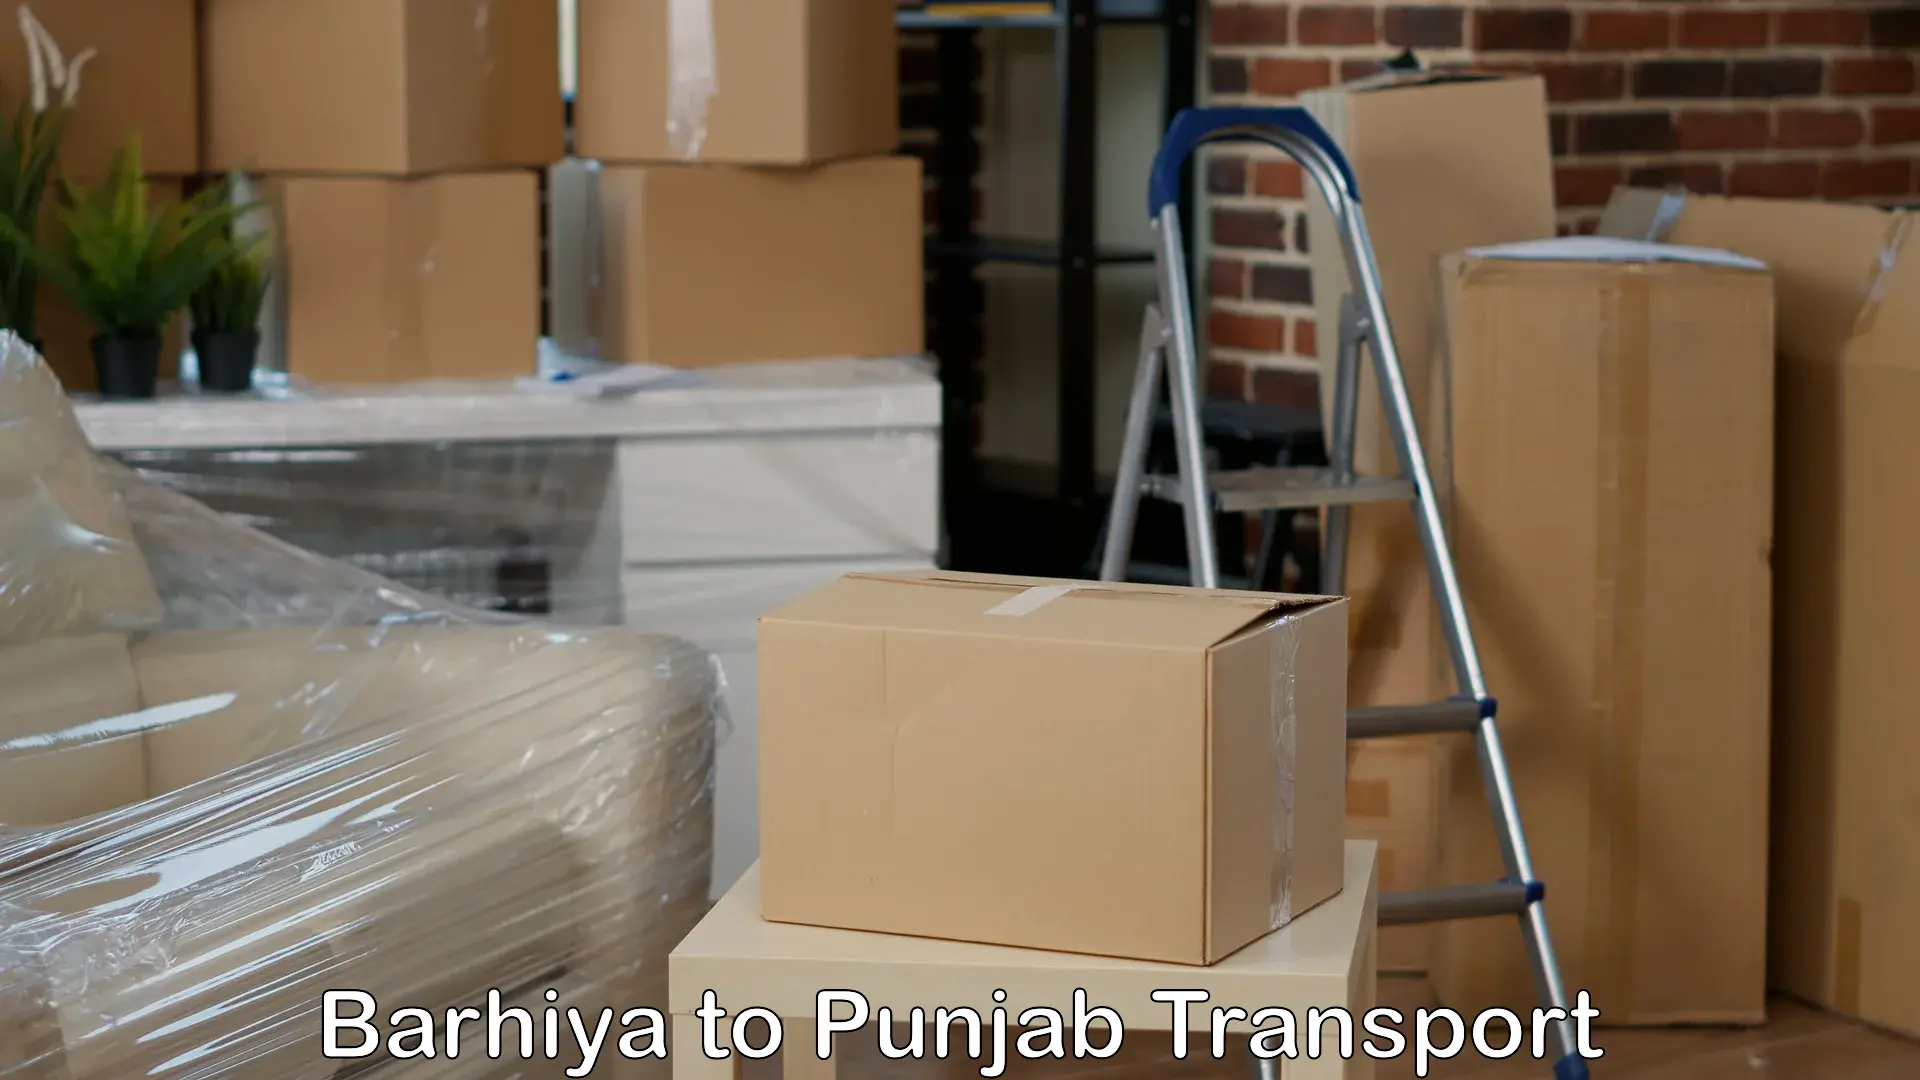 Express transport services Barhiya to Punjab